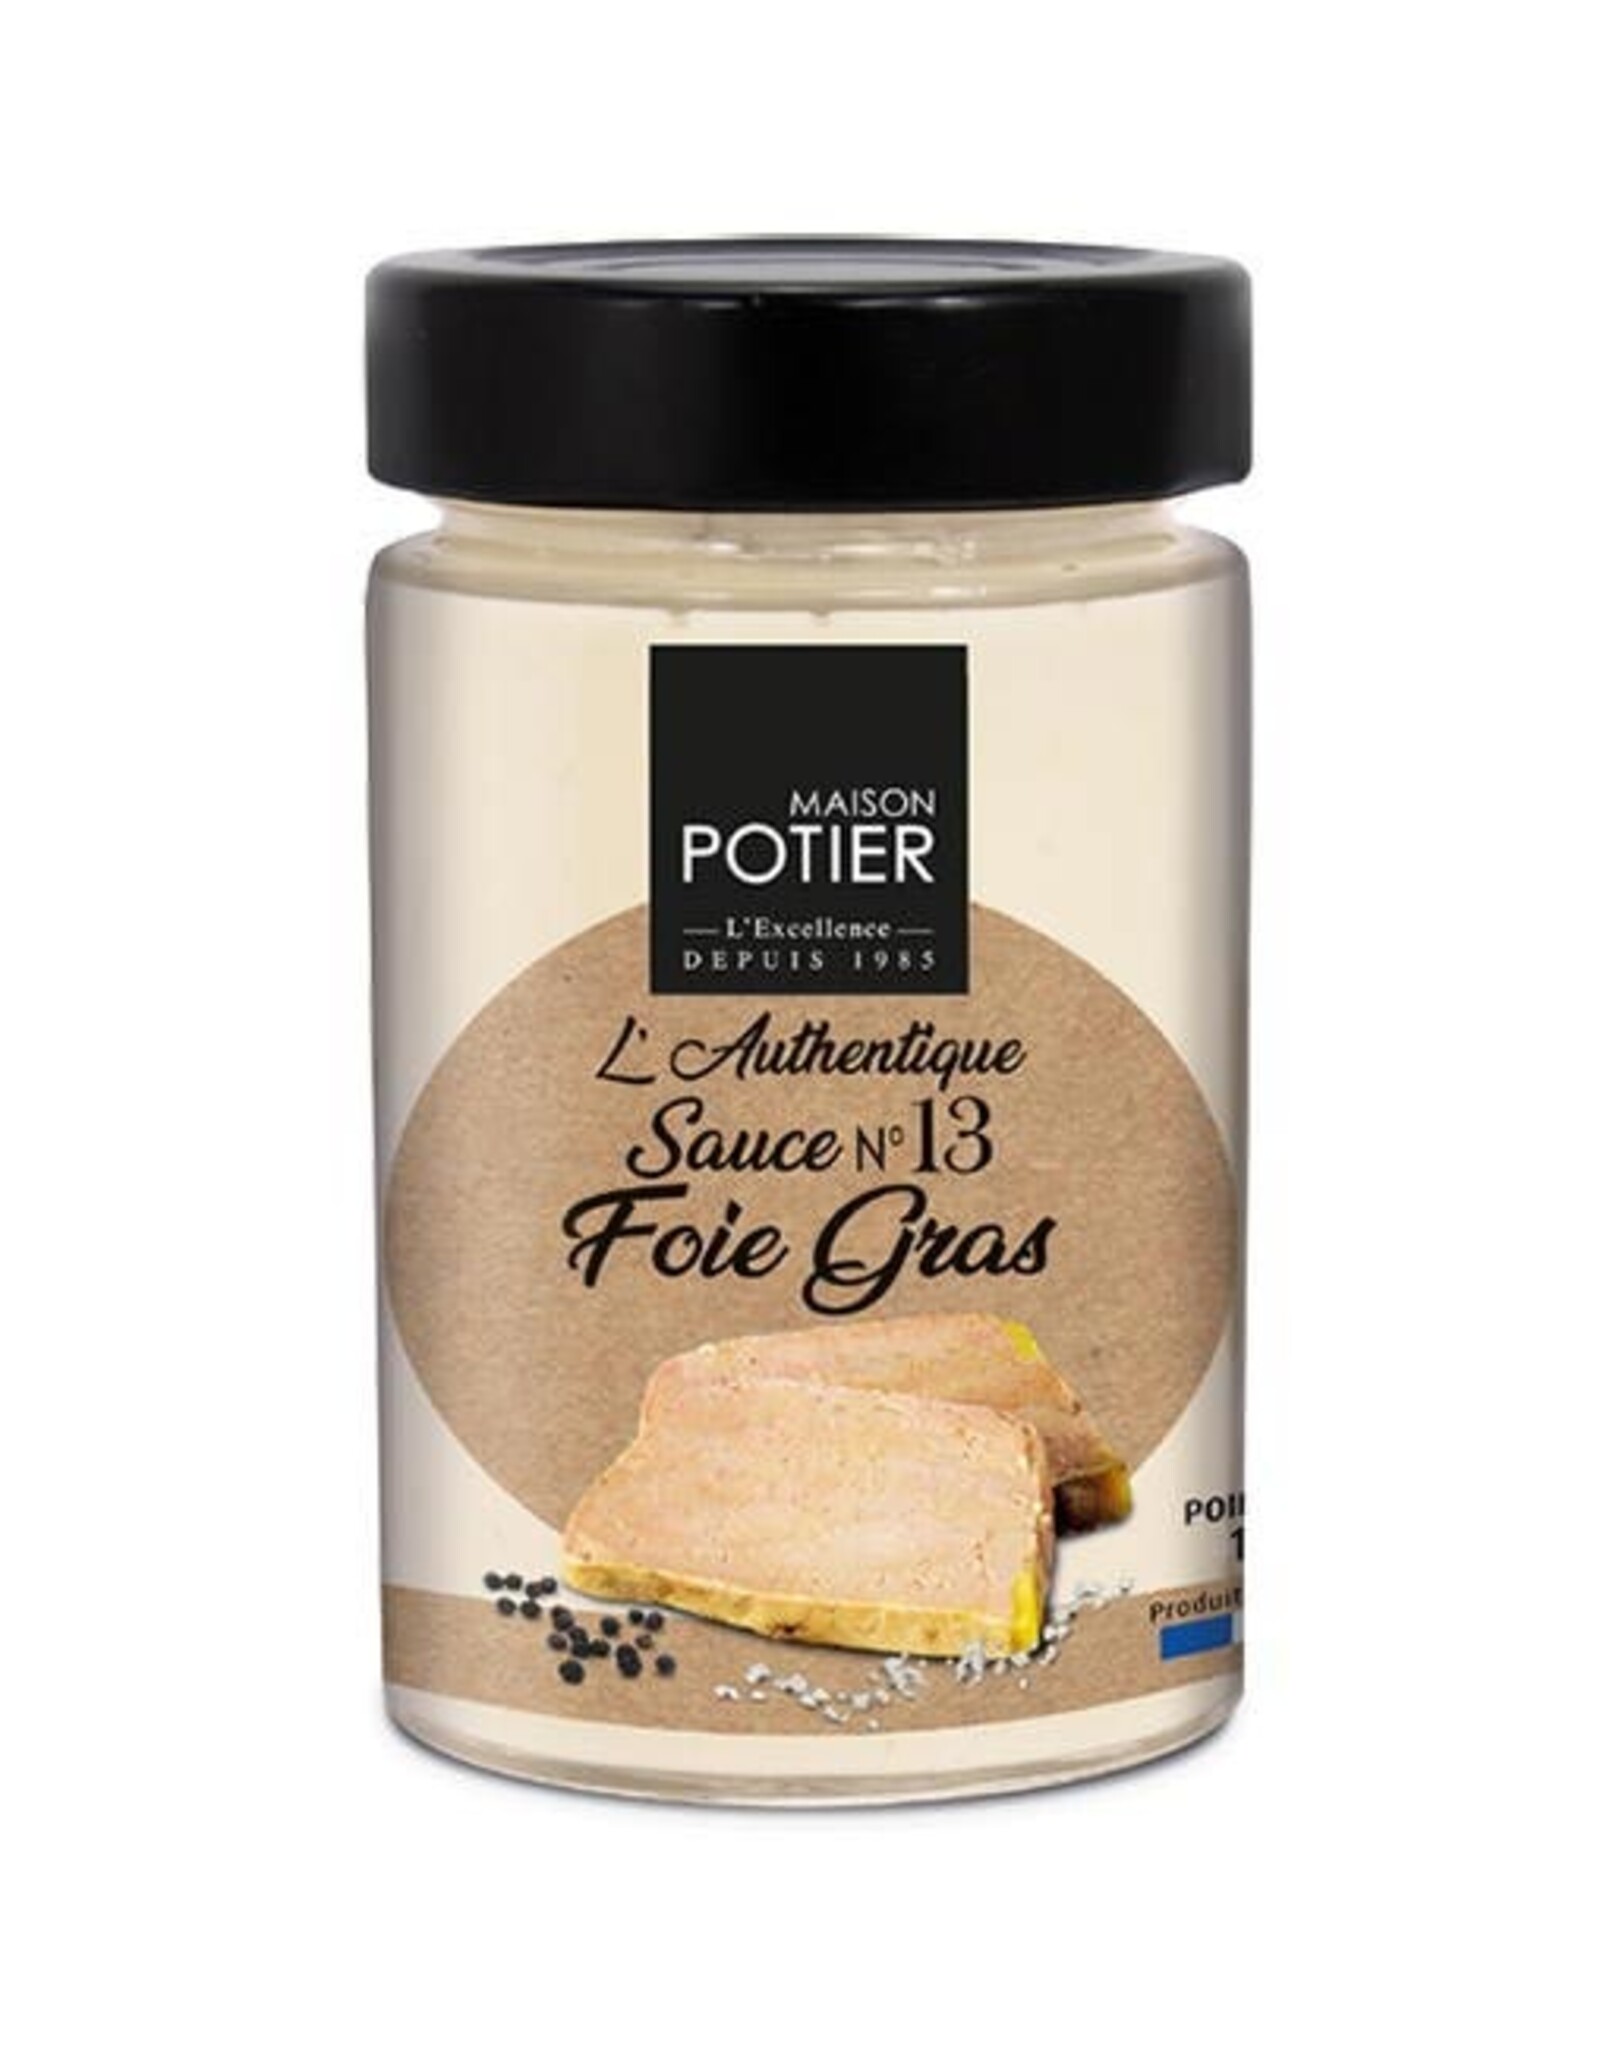 Maison Potier Foie Gras Sauce 180g